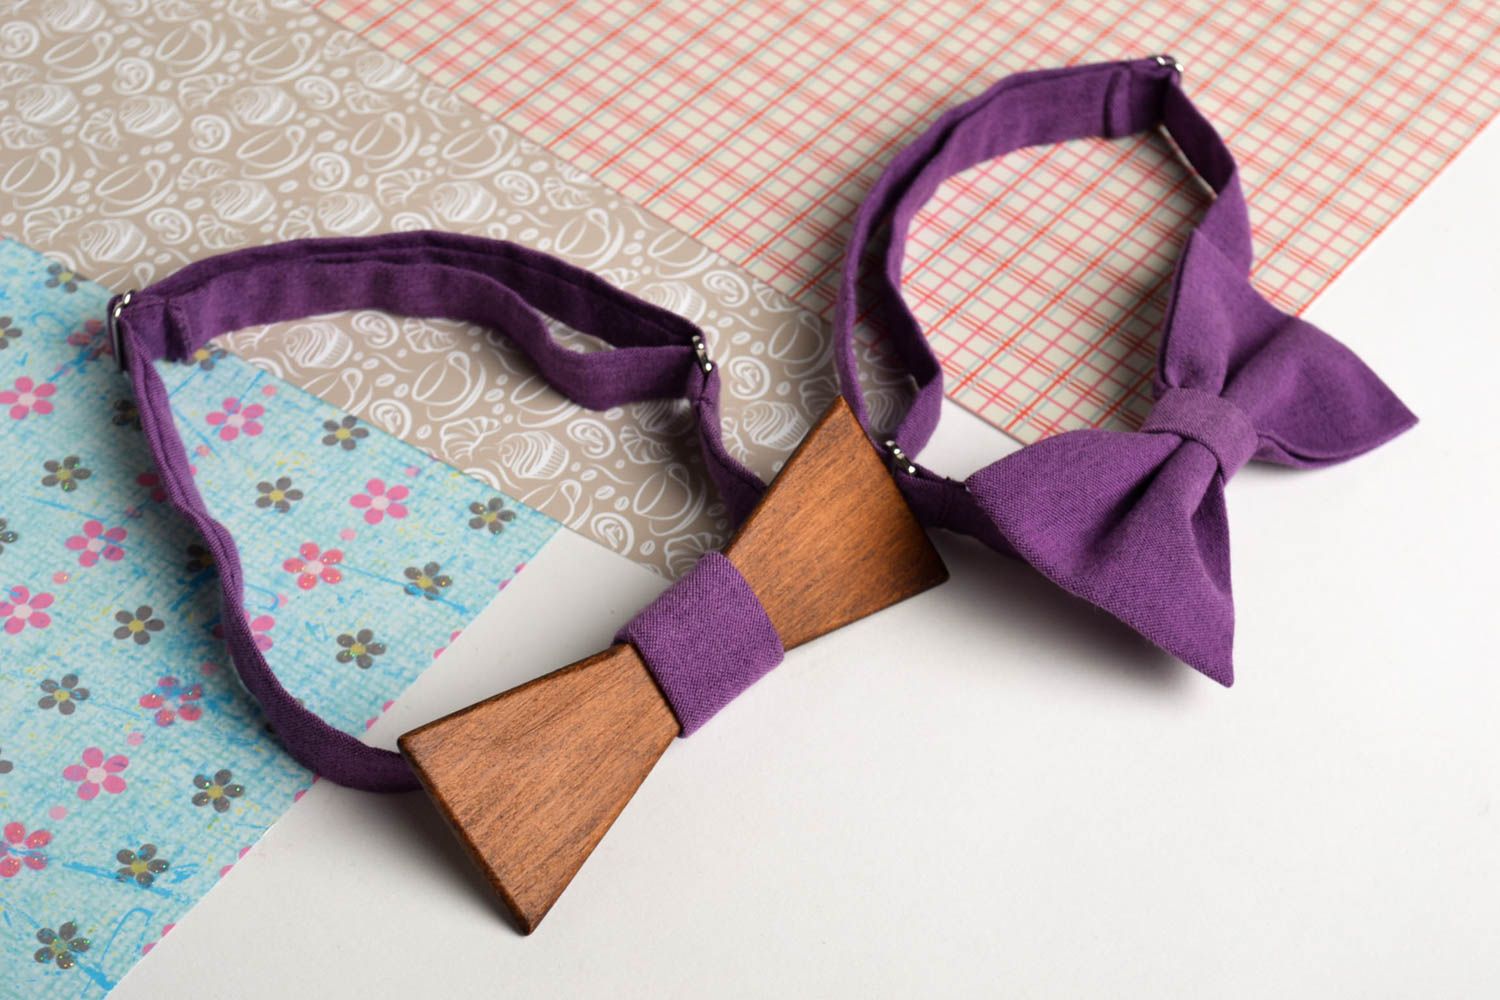 Handmade wooden bow tie designer bow tie men accessories present for boyfriend photo 1